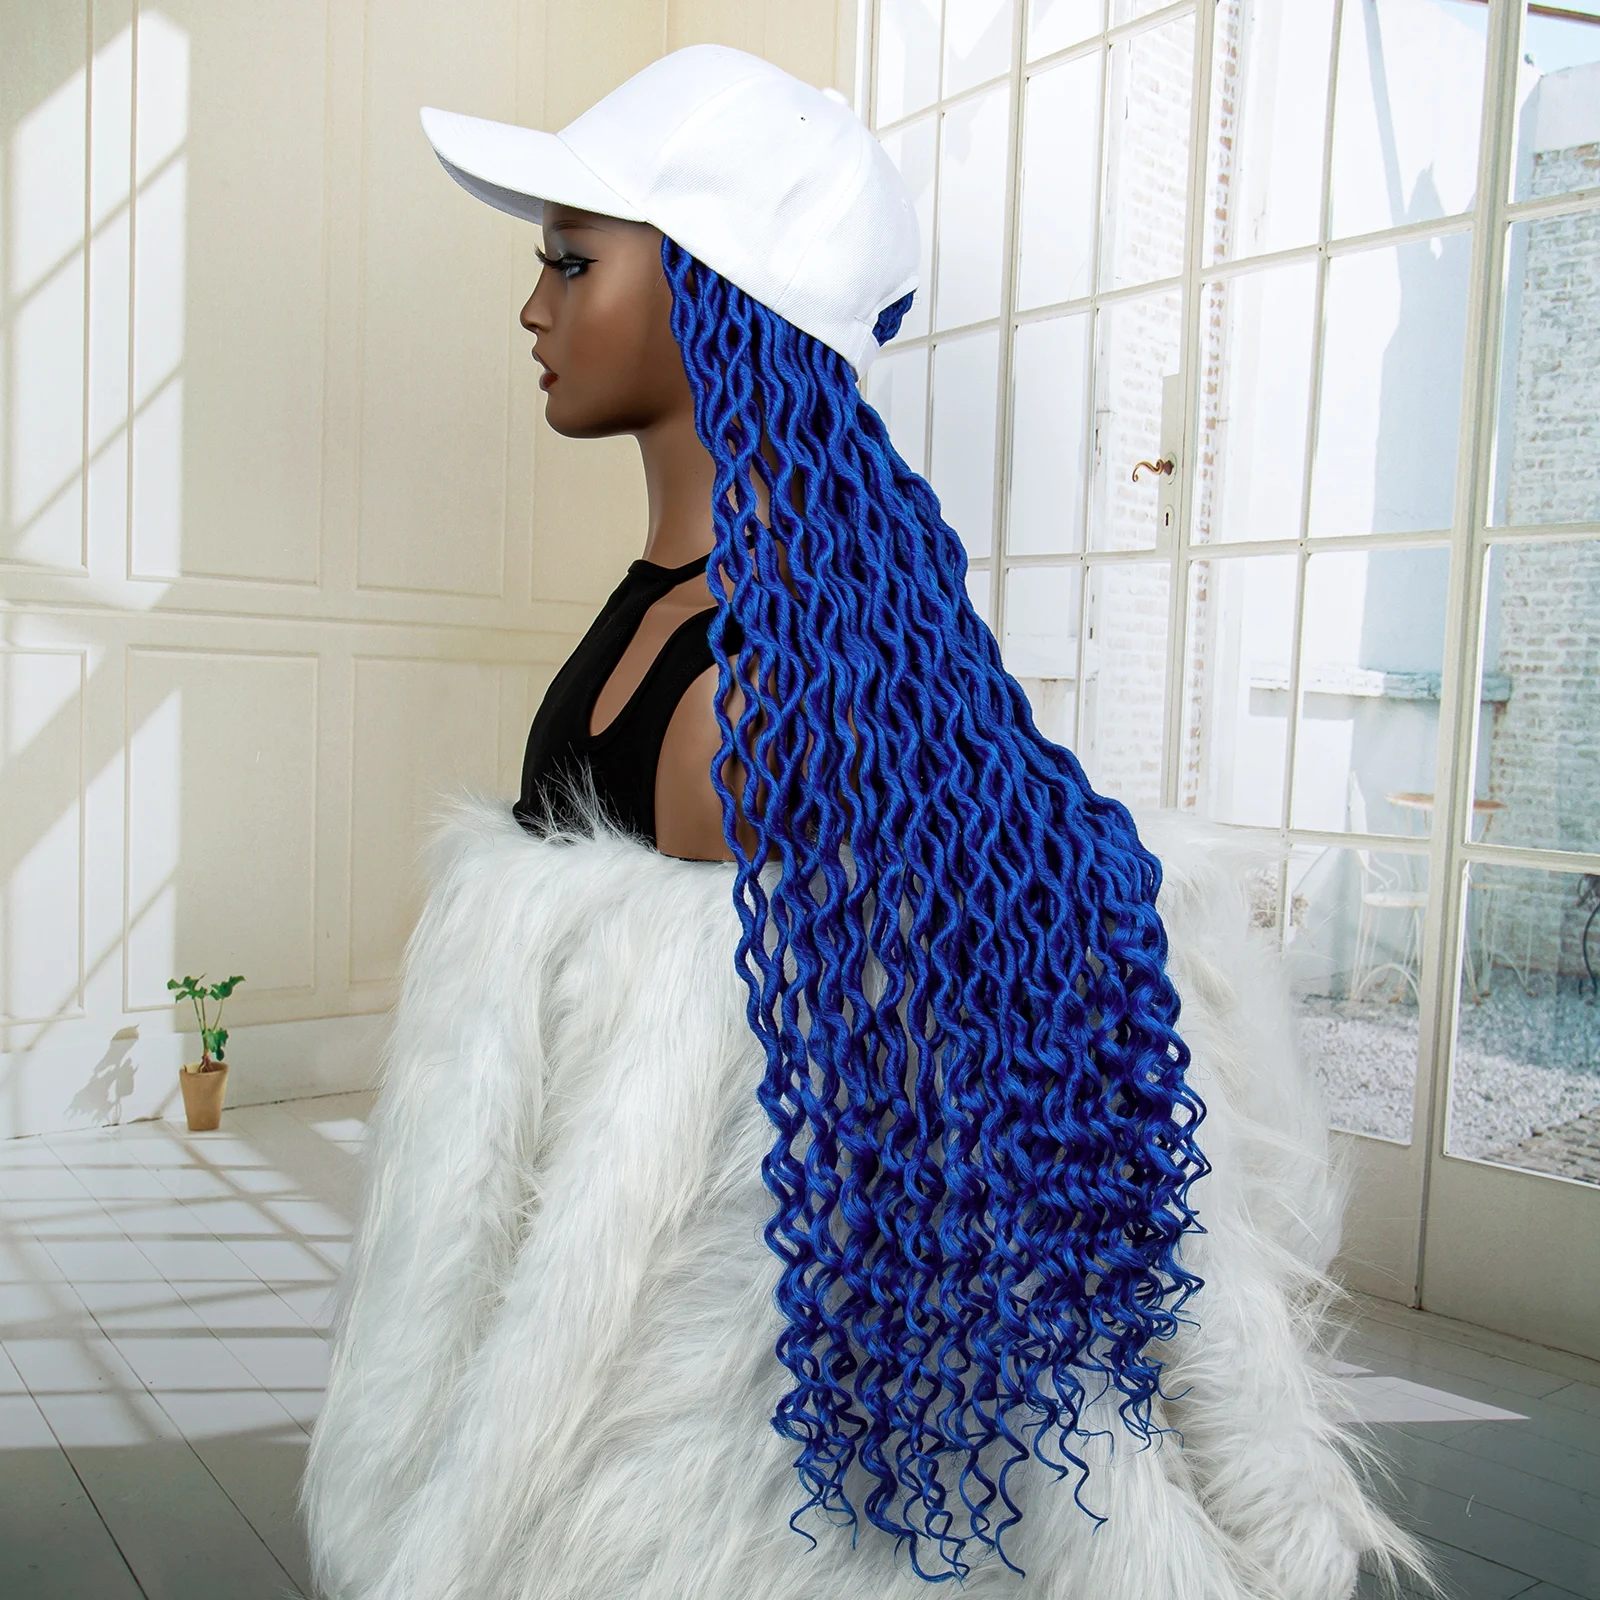 34-Дюймовая синяя синтетическая кепка-парик с волнистыми косами для чернокожих женщин, удлиненная бейсбольная кепка, плетеный парик